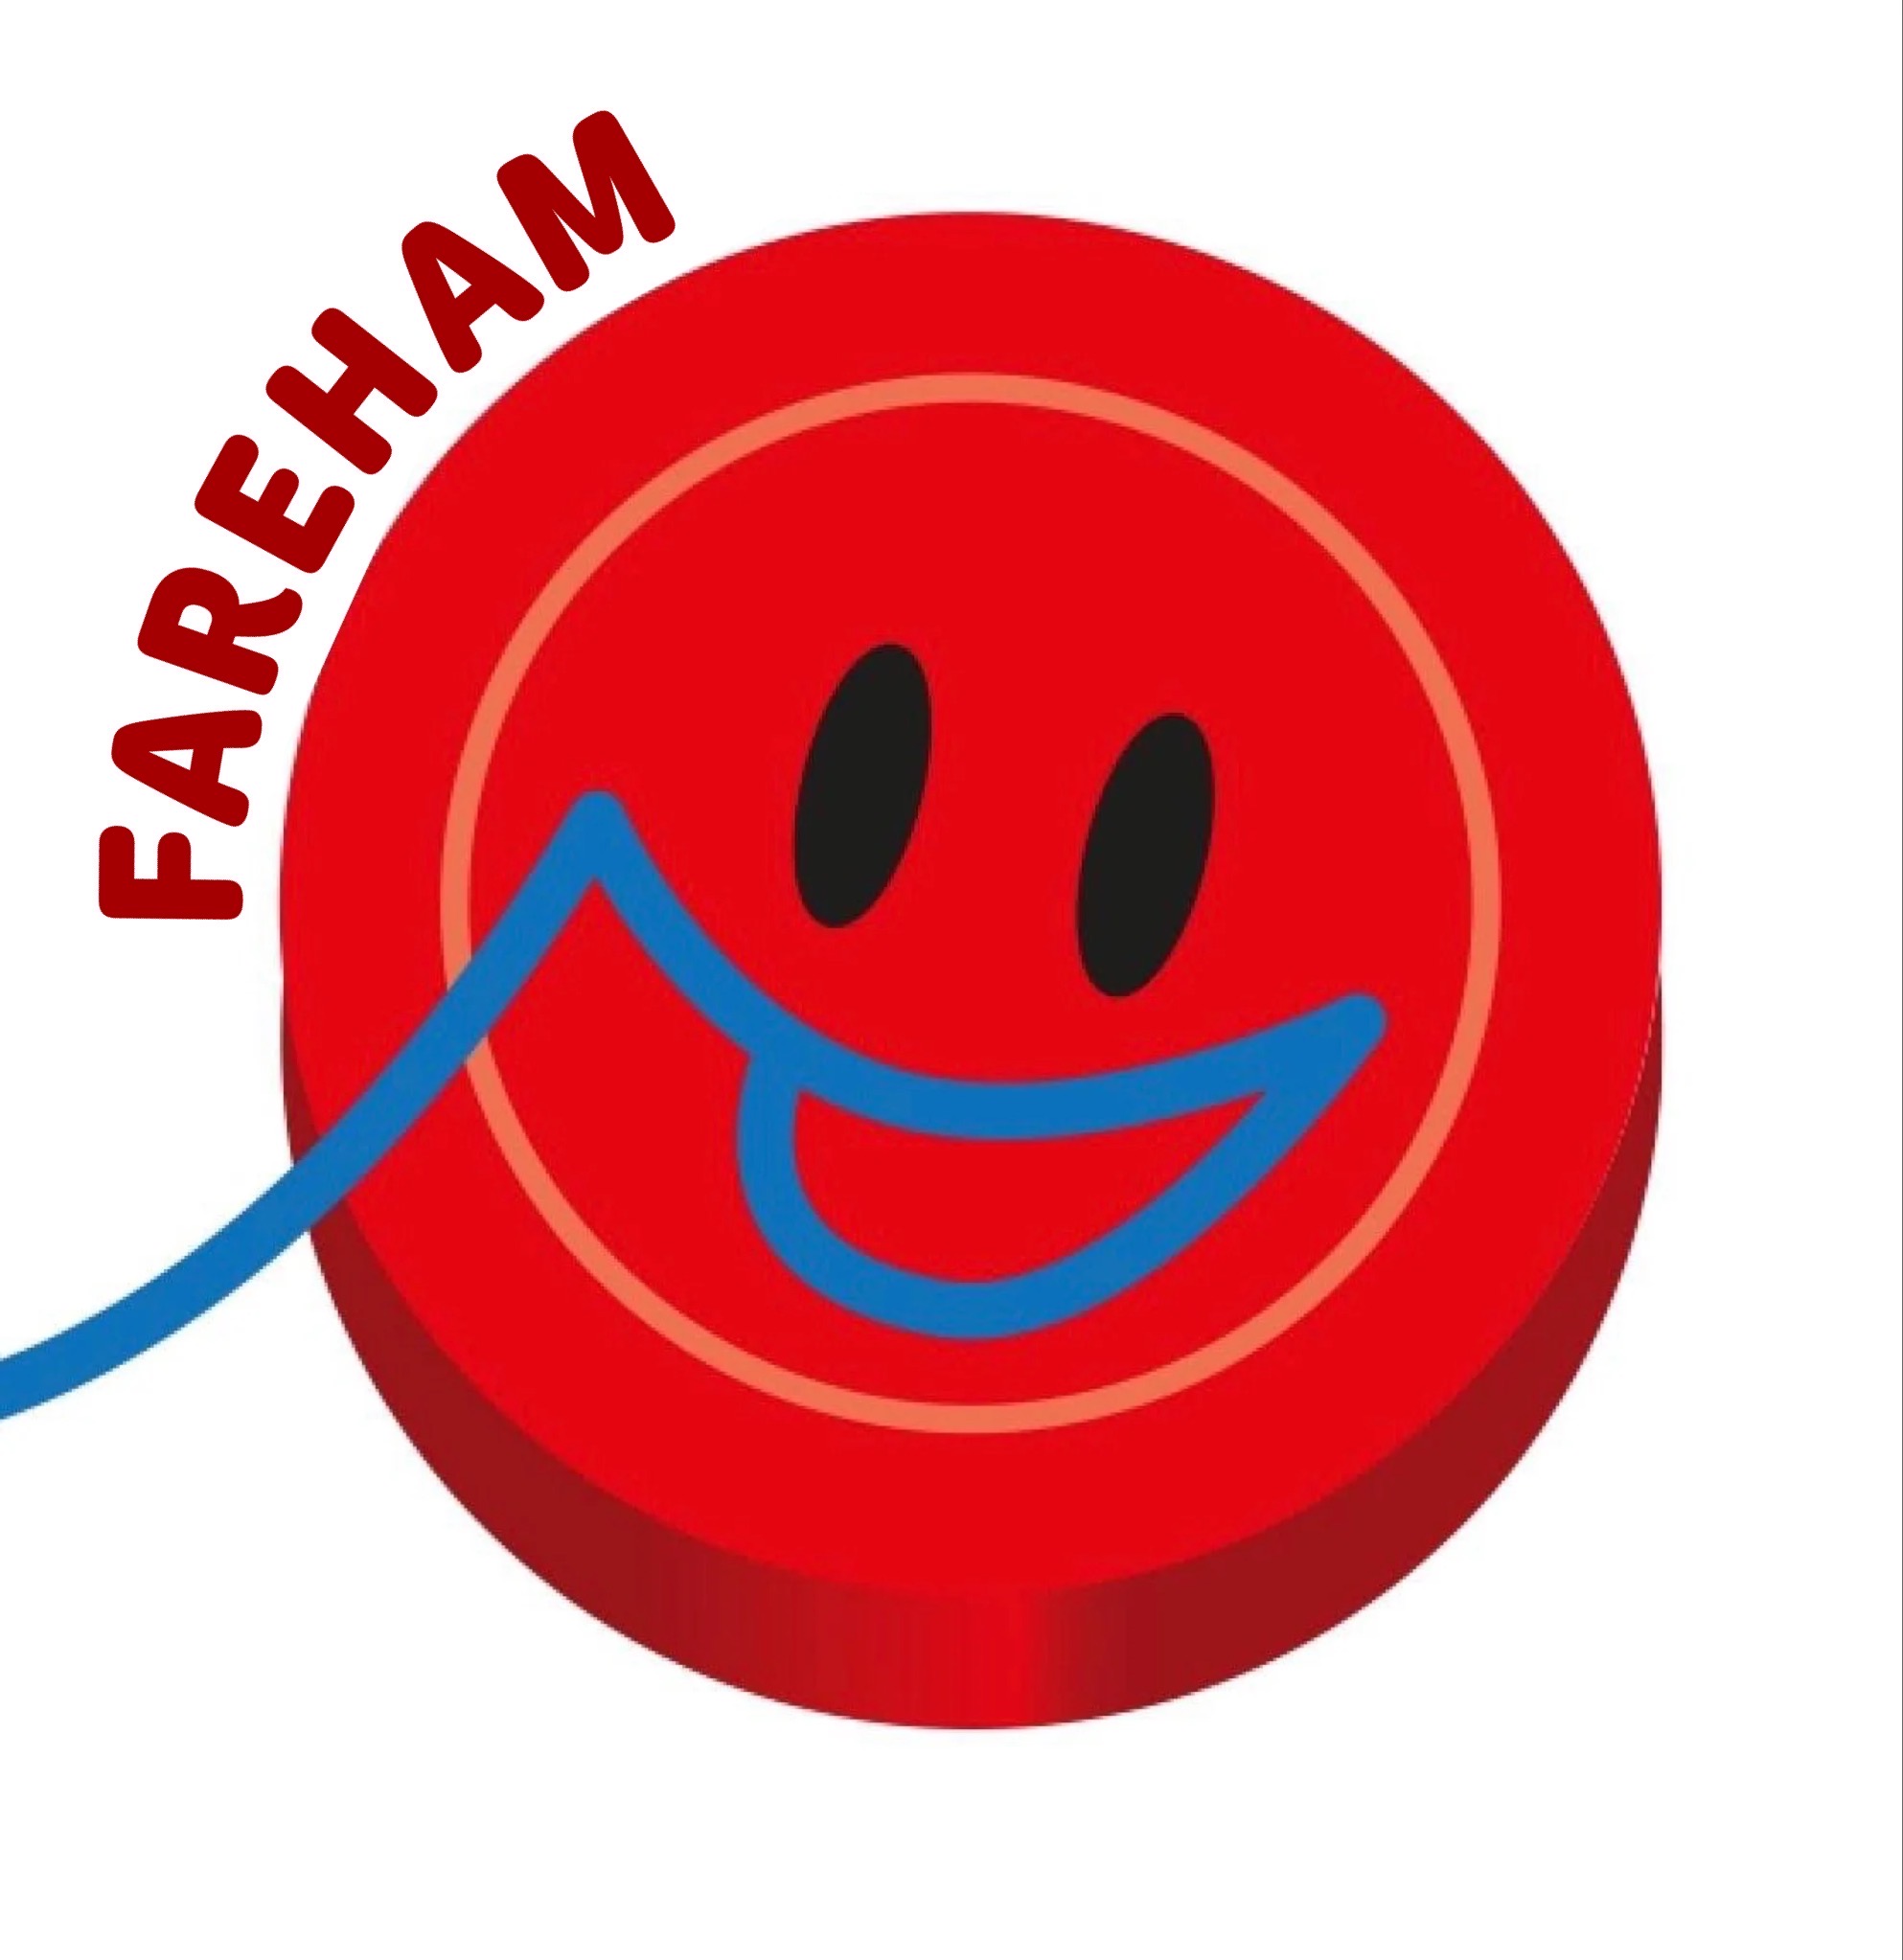 Fareham Stitches Comedy Club